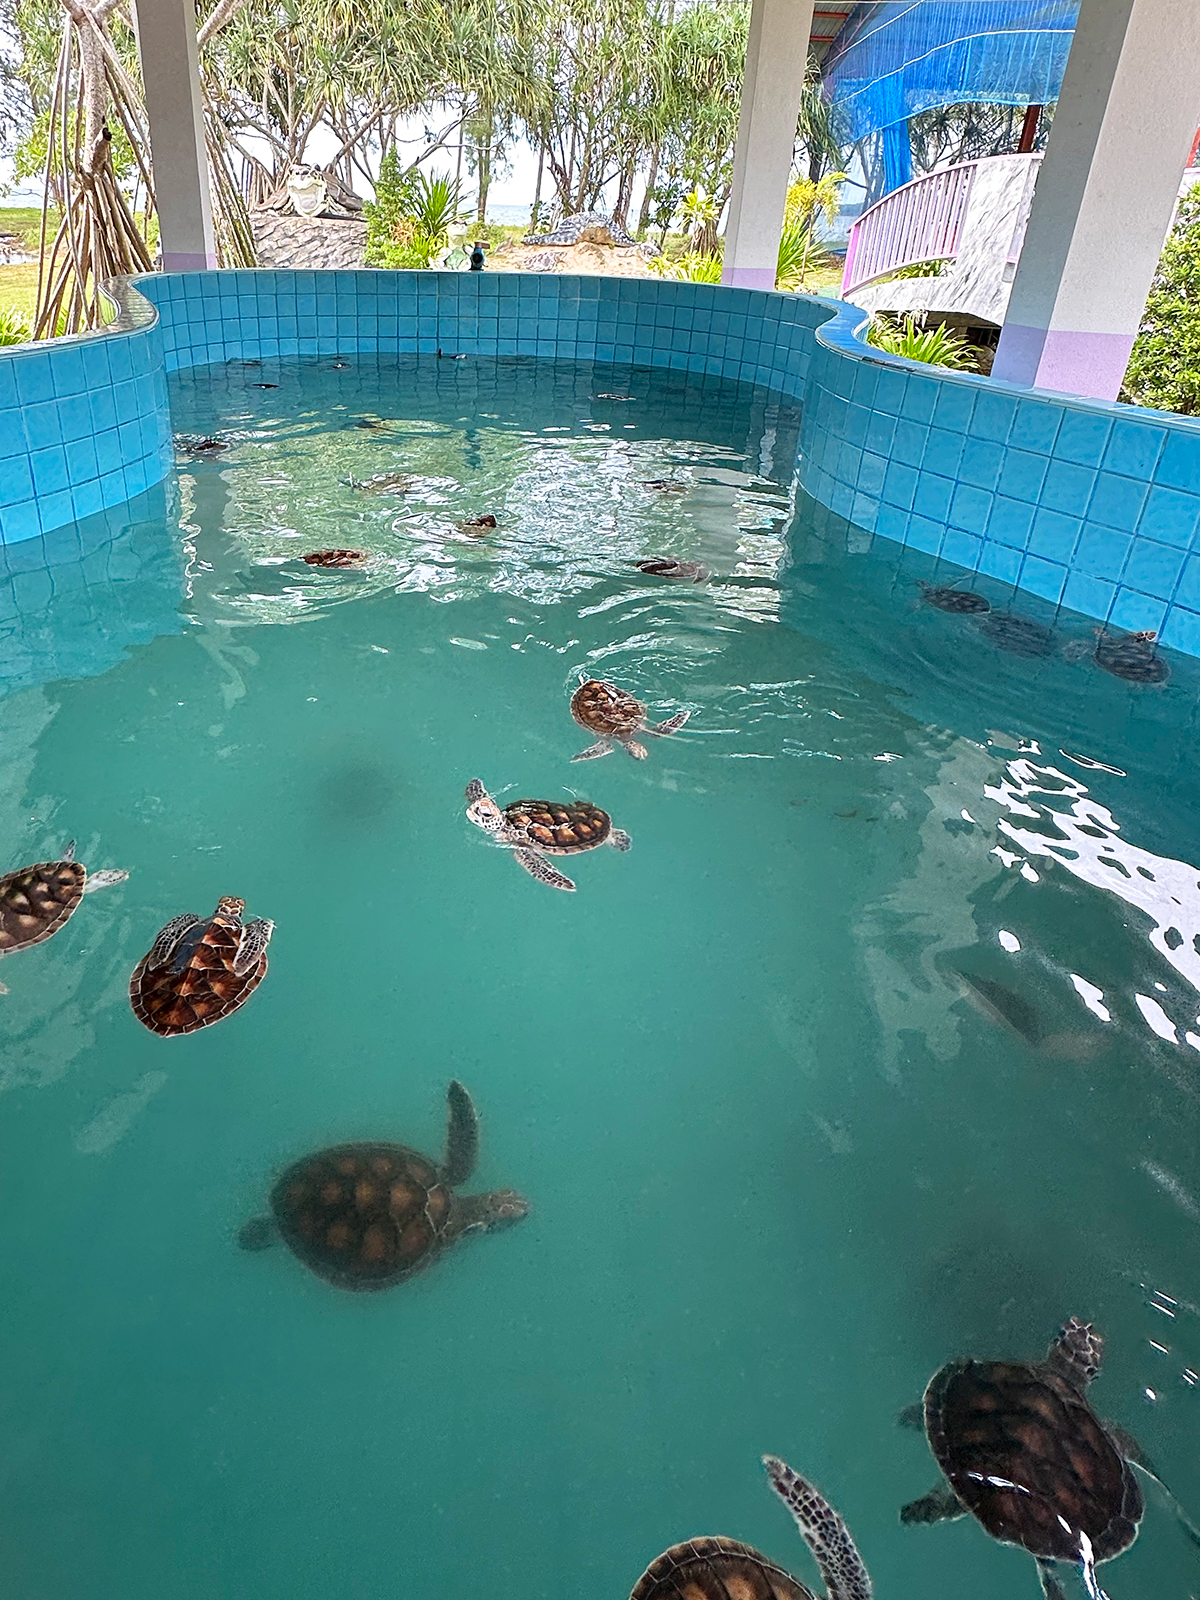 sea turtles in pool in khao lak thailand